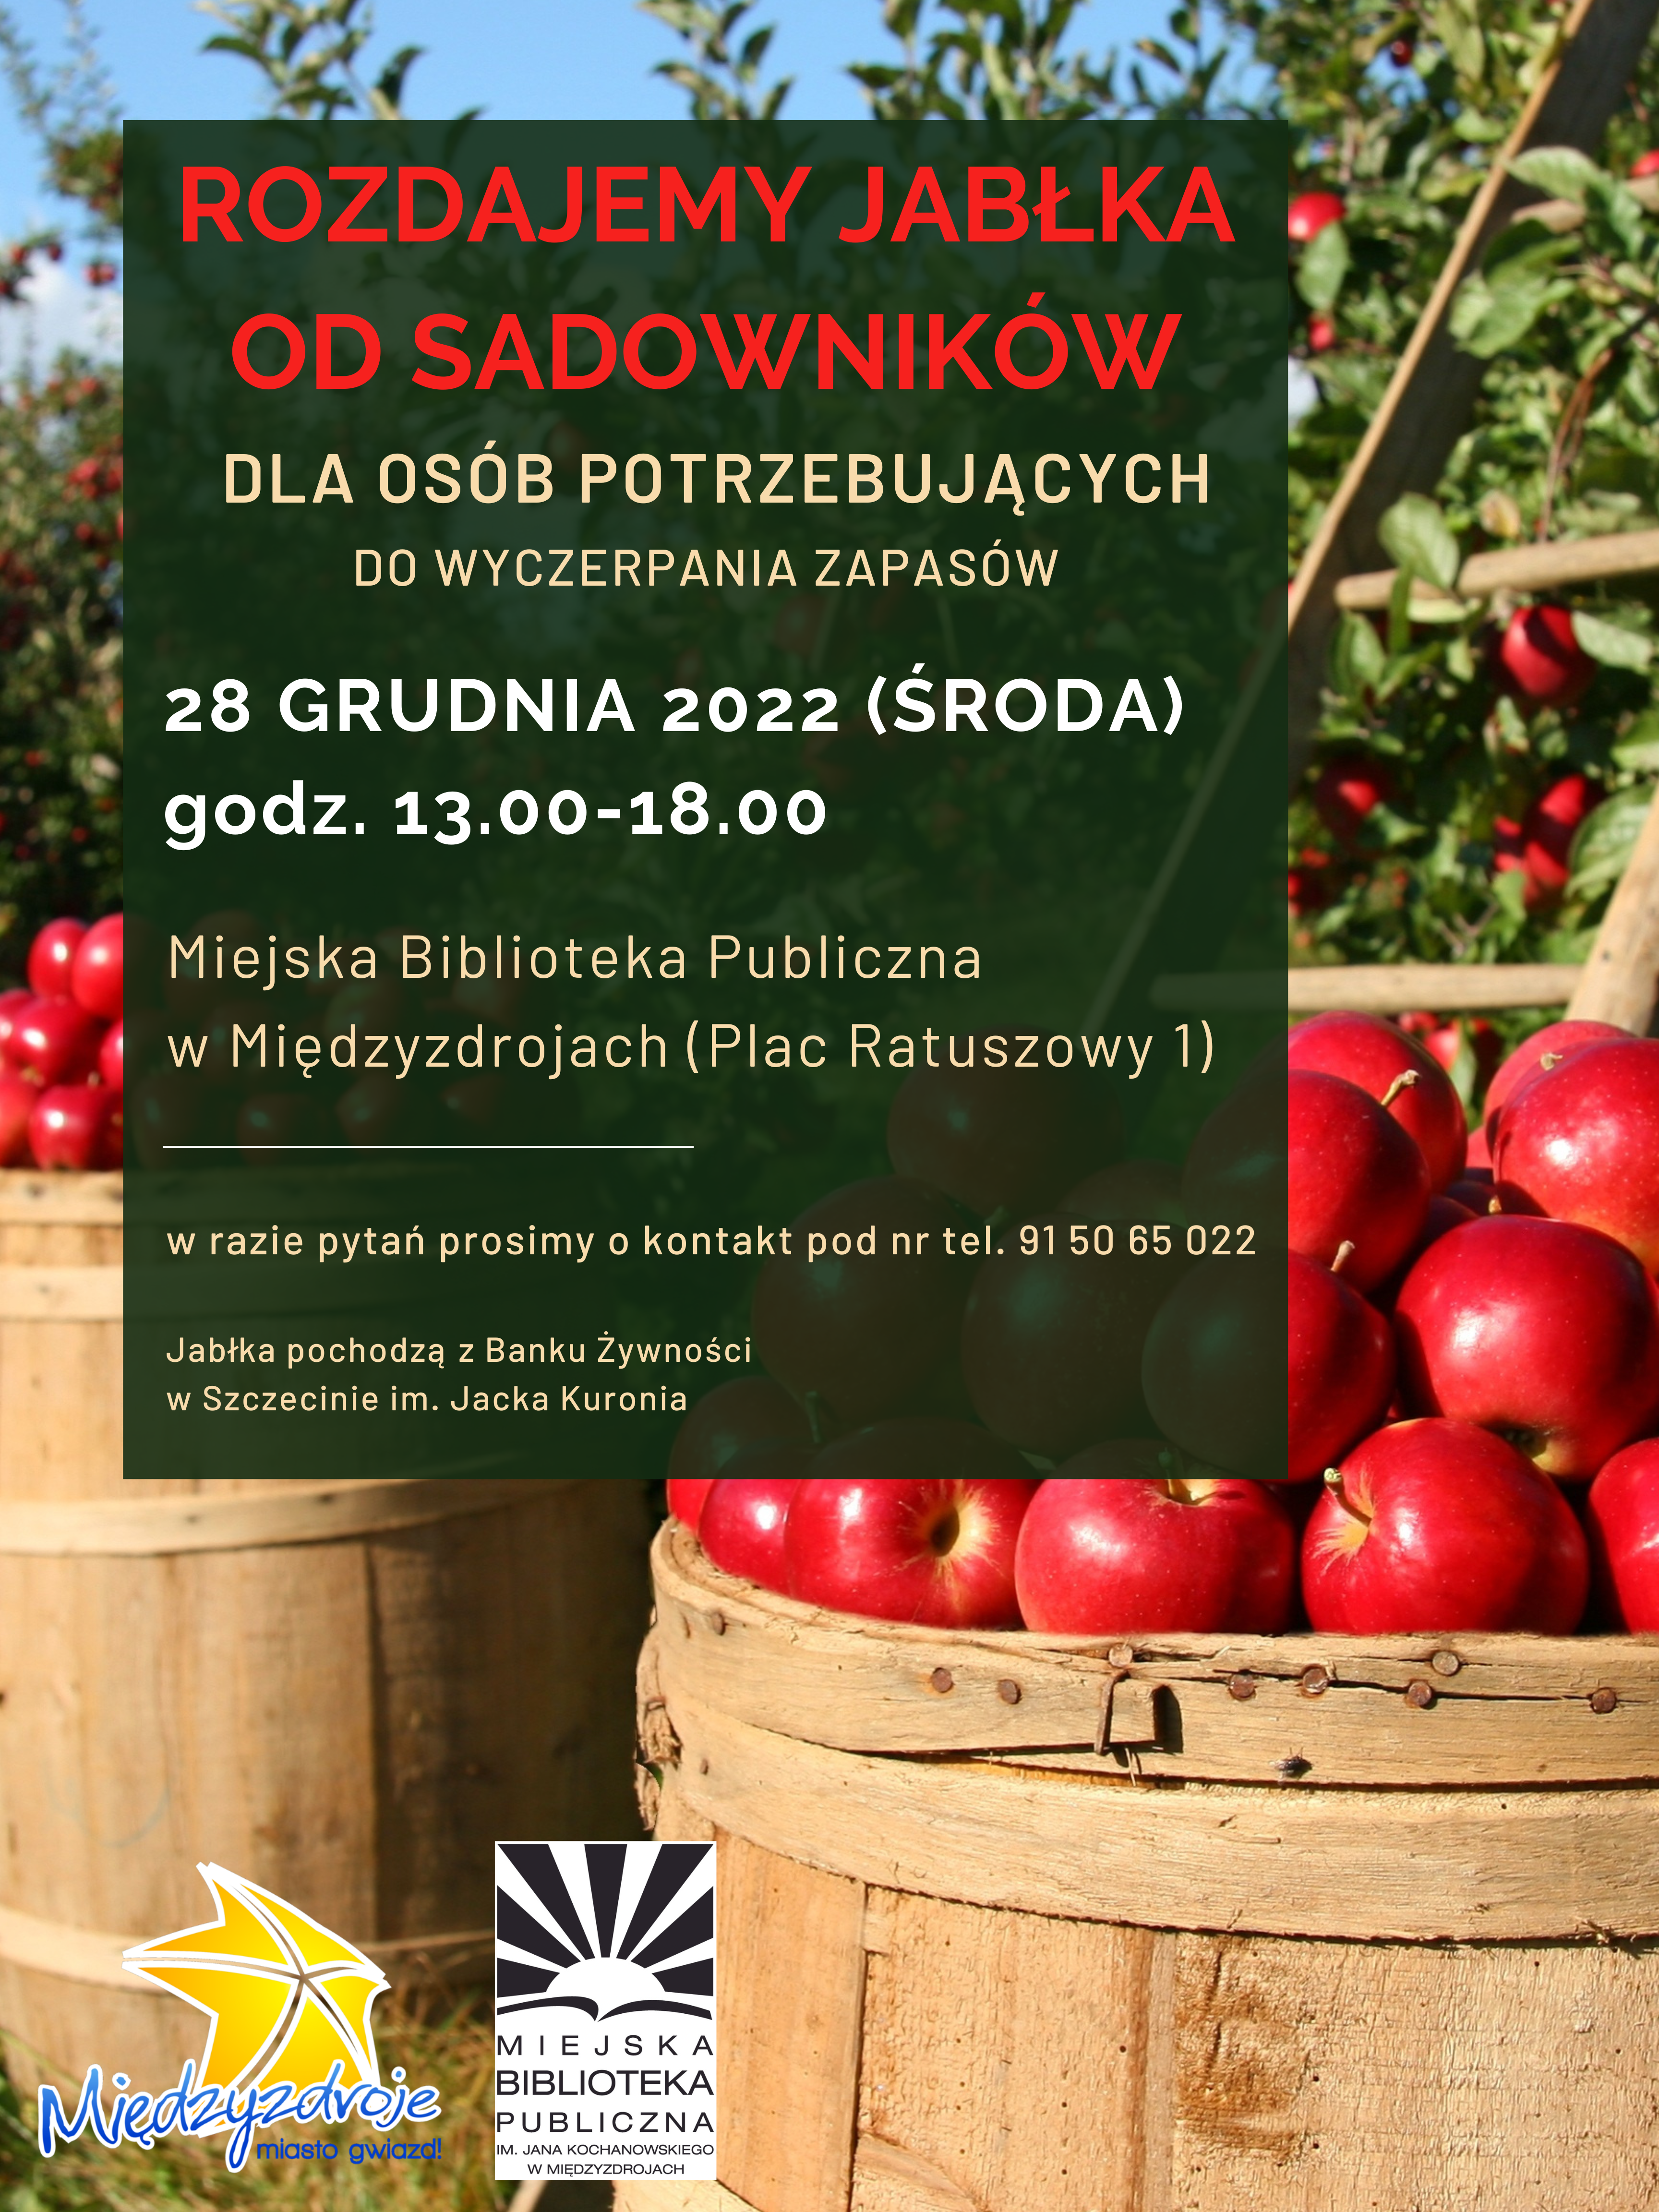 Rozdajemy jabłka od sadowników dla osób potrzebujących! 28 grudnia 2022 r. - zapowiedź